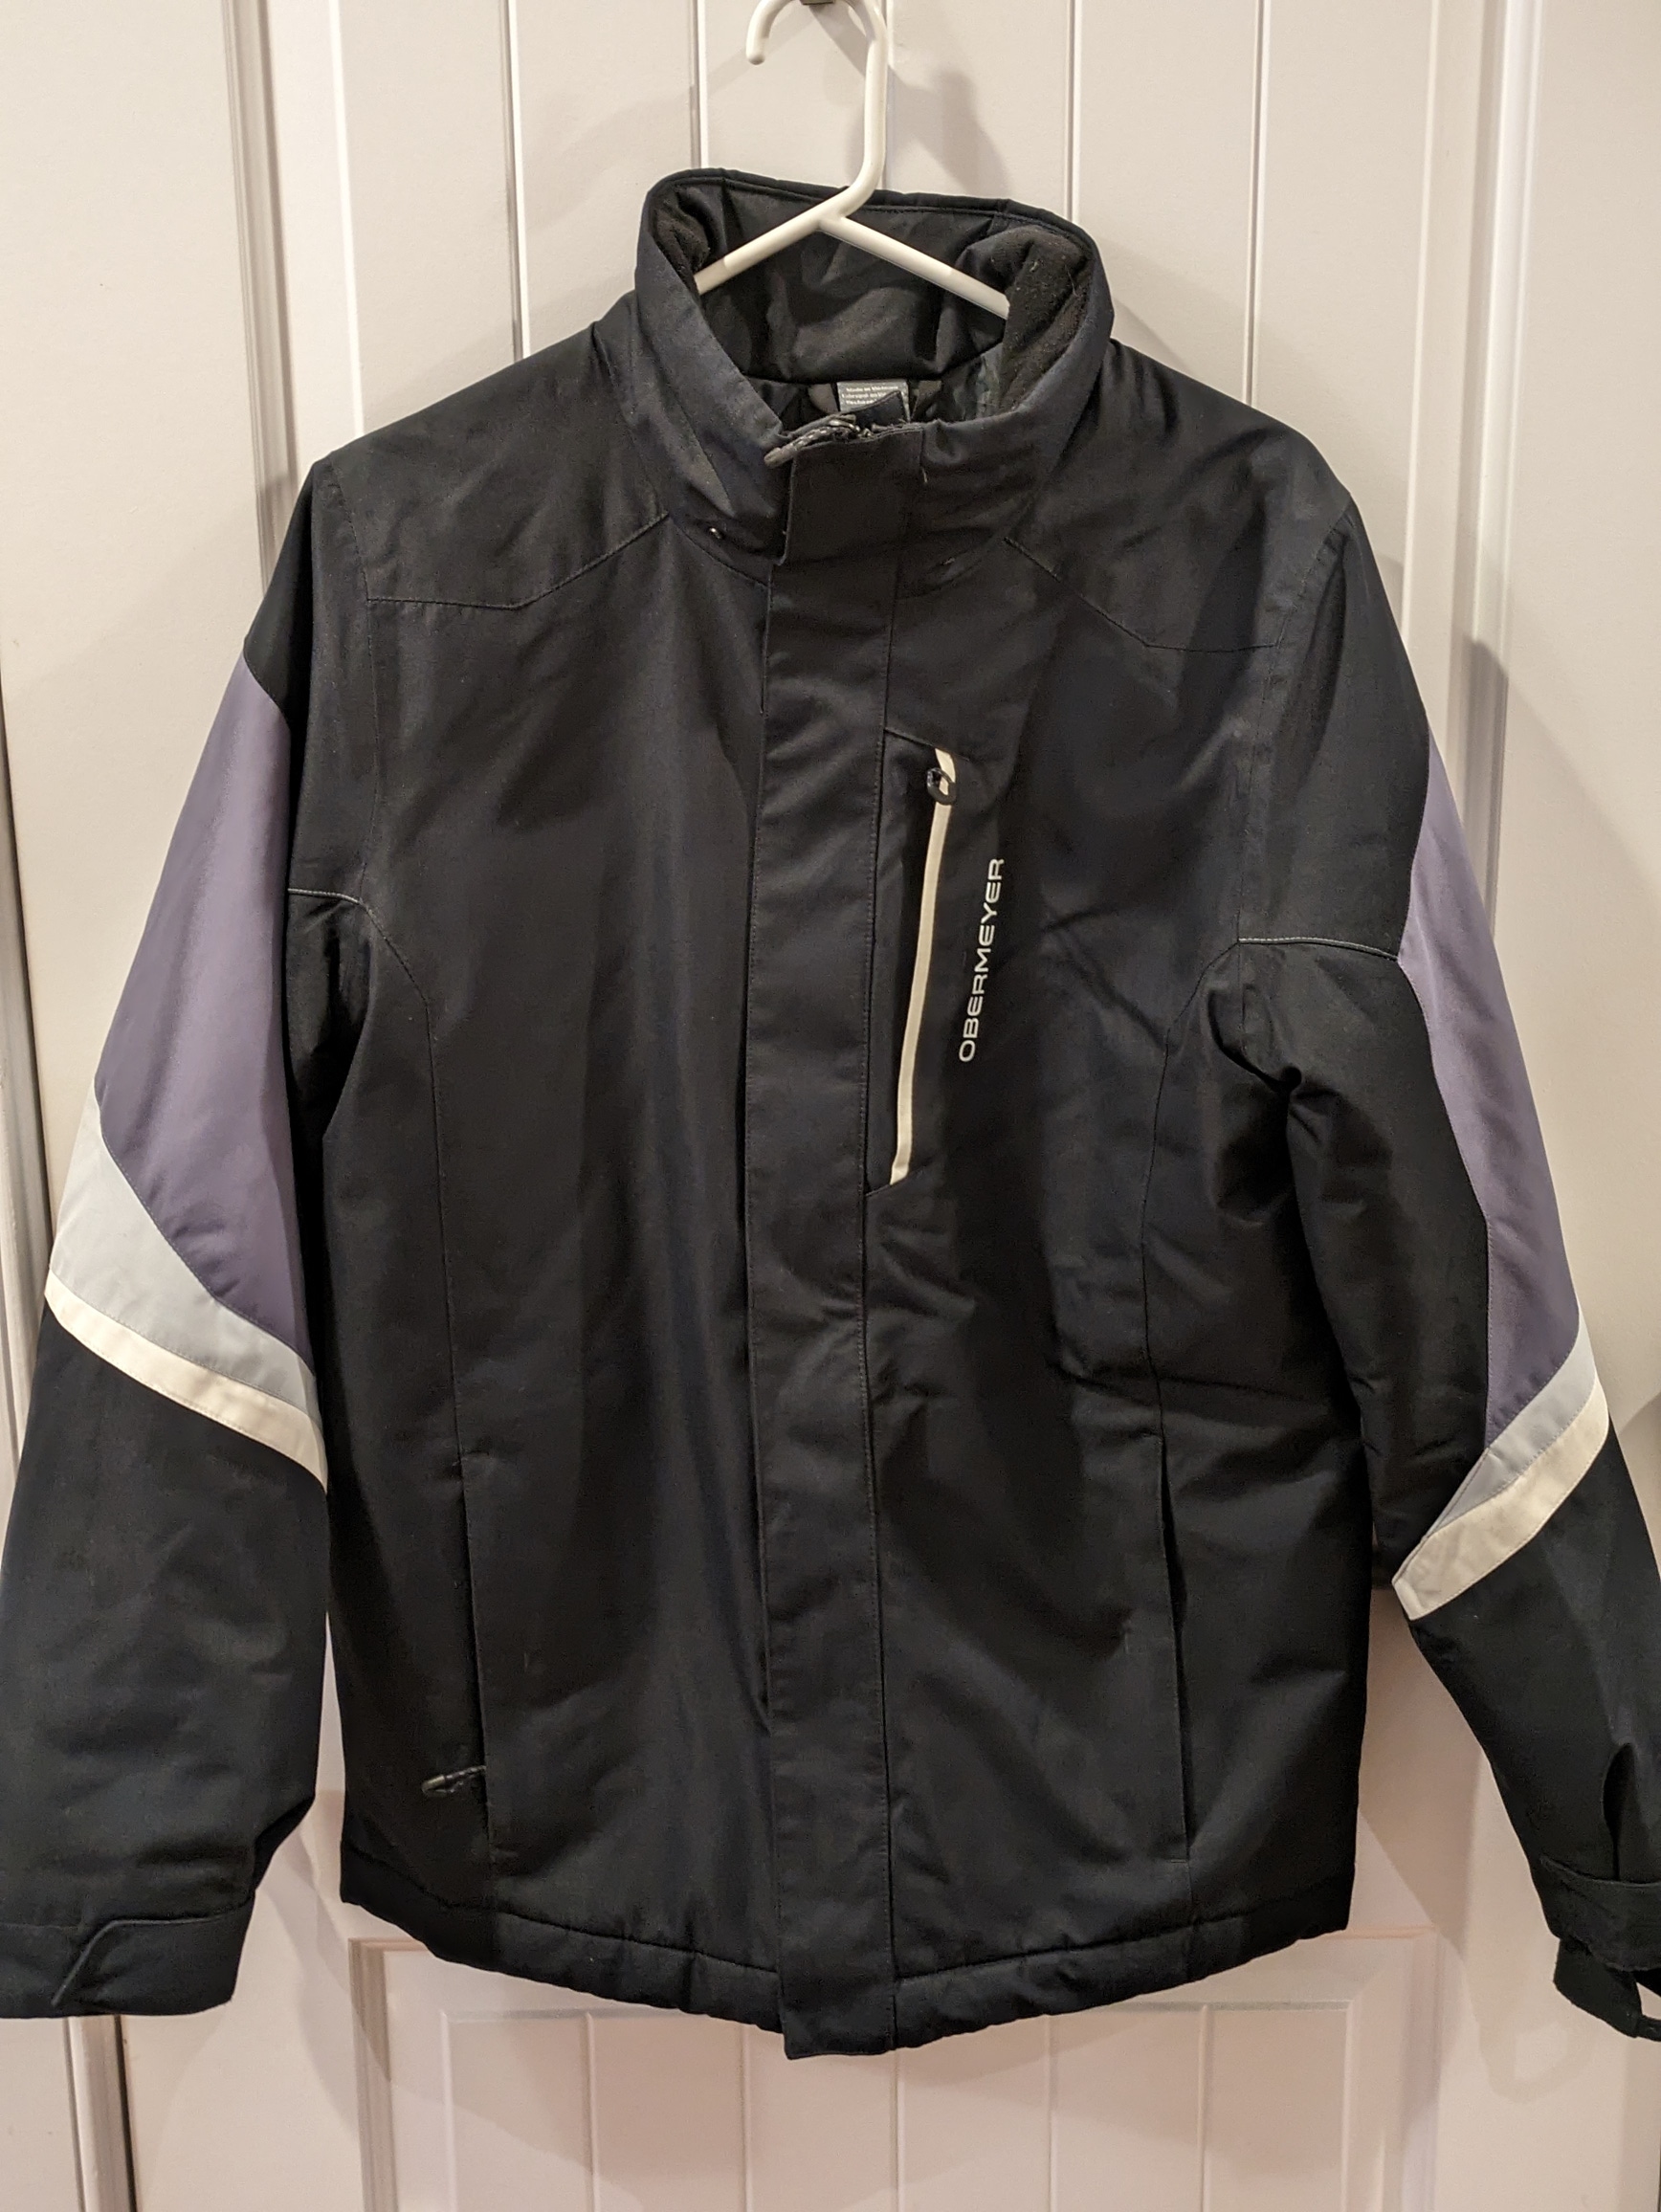 Obermeyer Teen Boys Fleet Jacket - Used, Like New Condition, Teen XL (18)